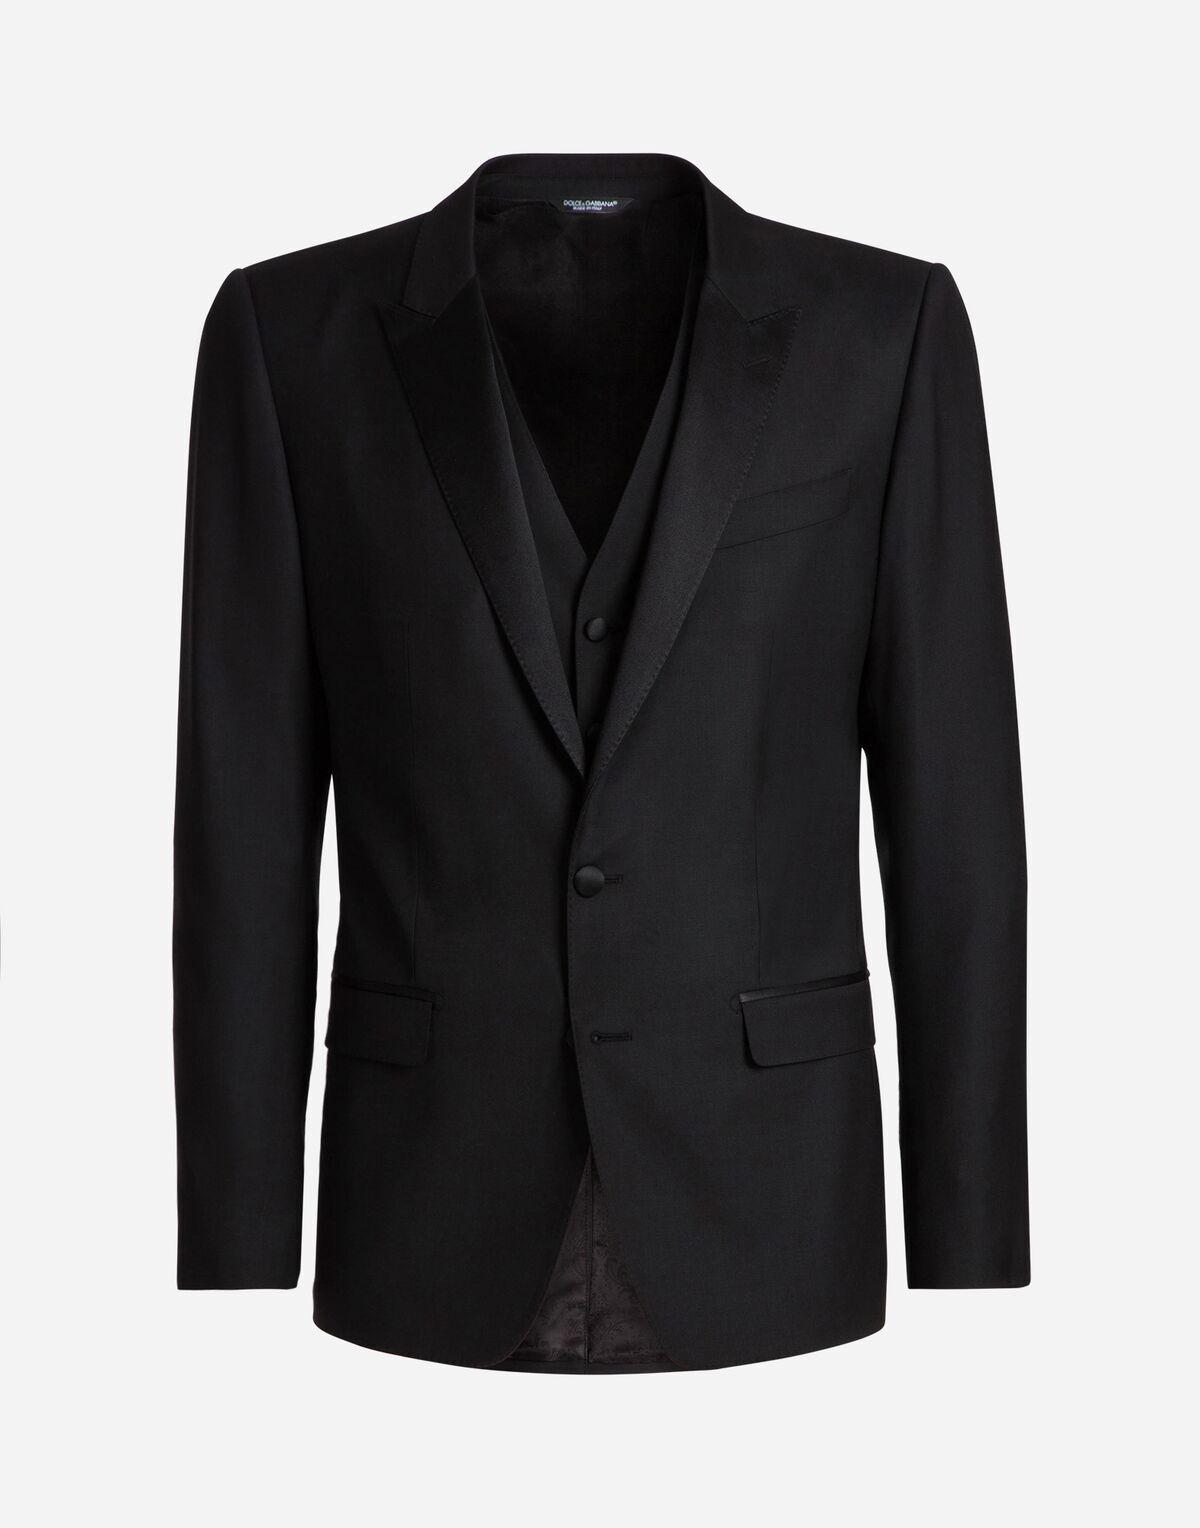 Dolce & Gabbana Tuxedo In Wool in Black for Men - Lyst